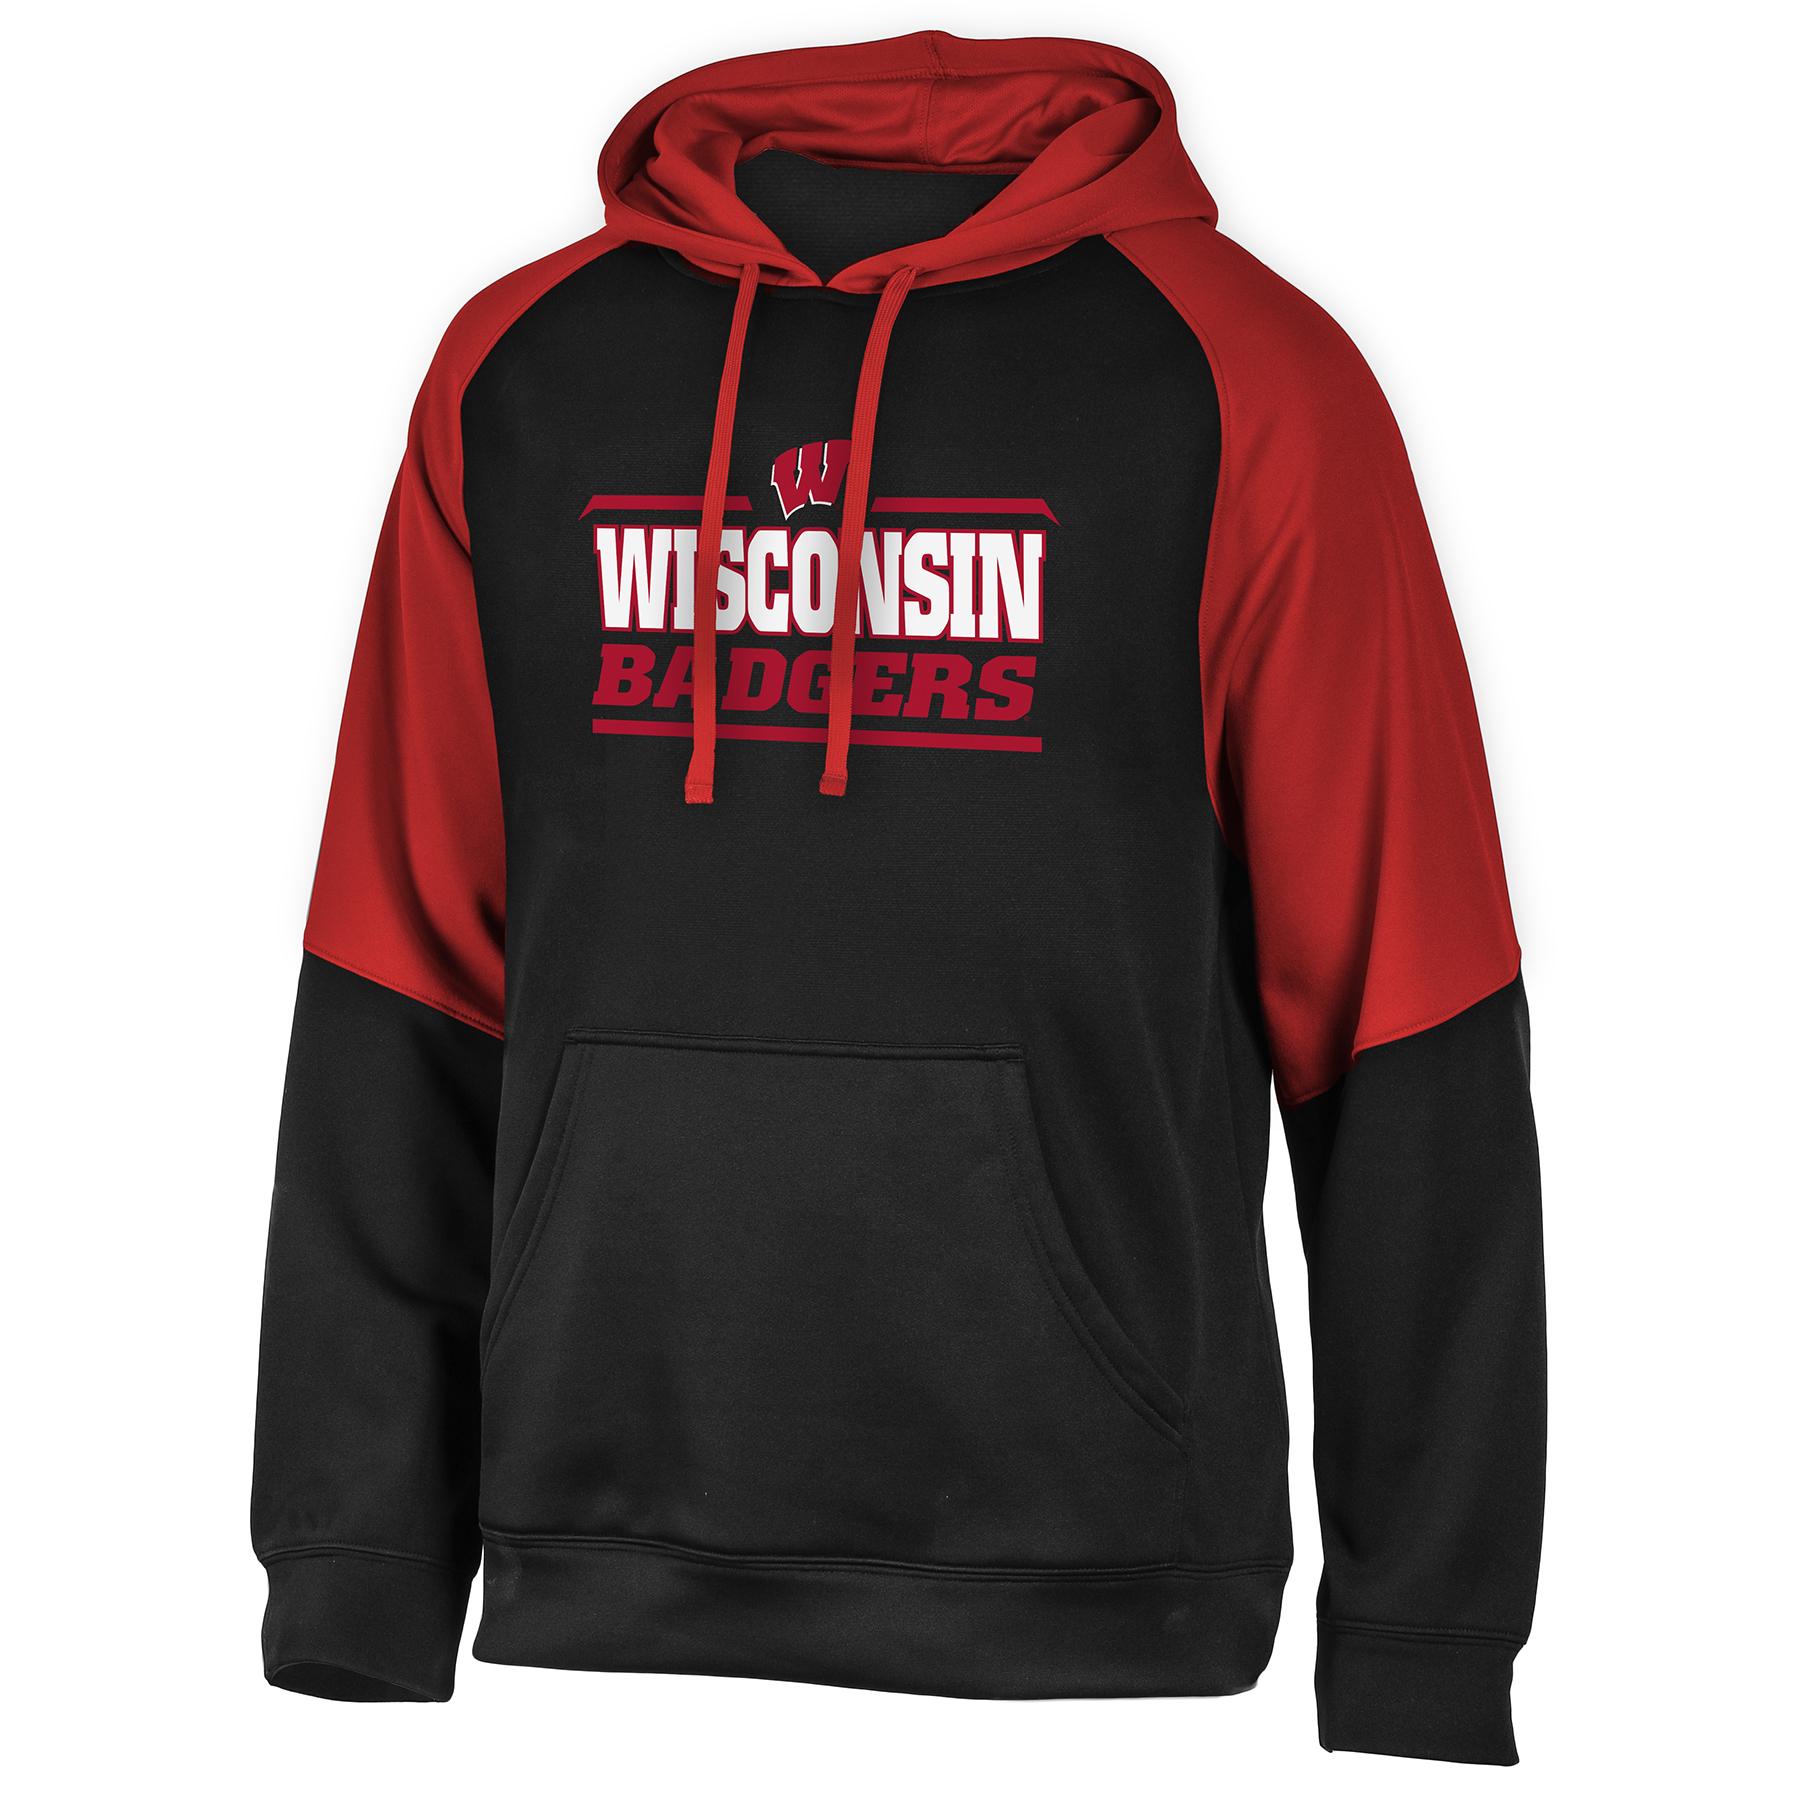 NCAA Men's Hoodie - University of Wisconsin Badgers